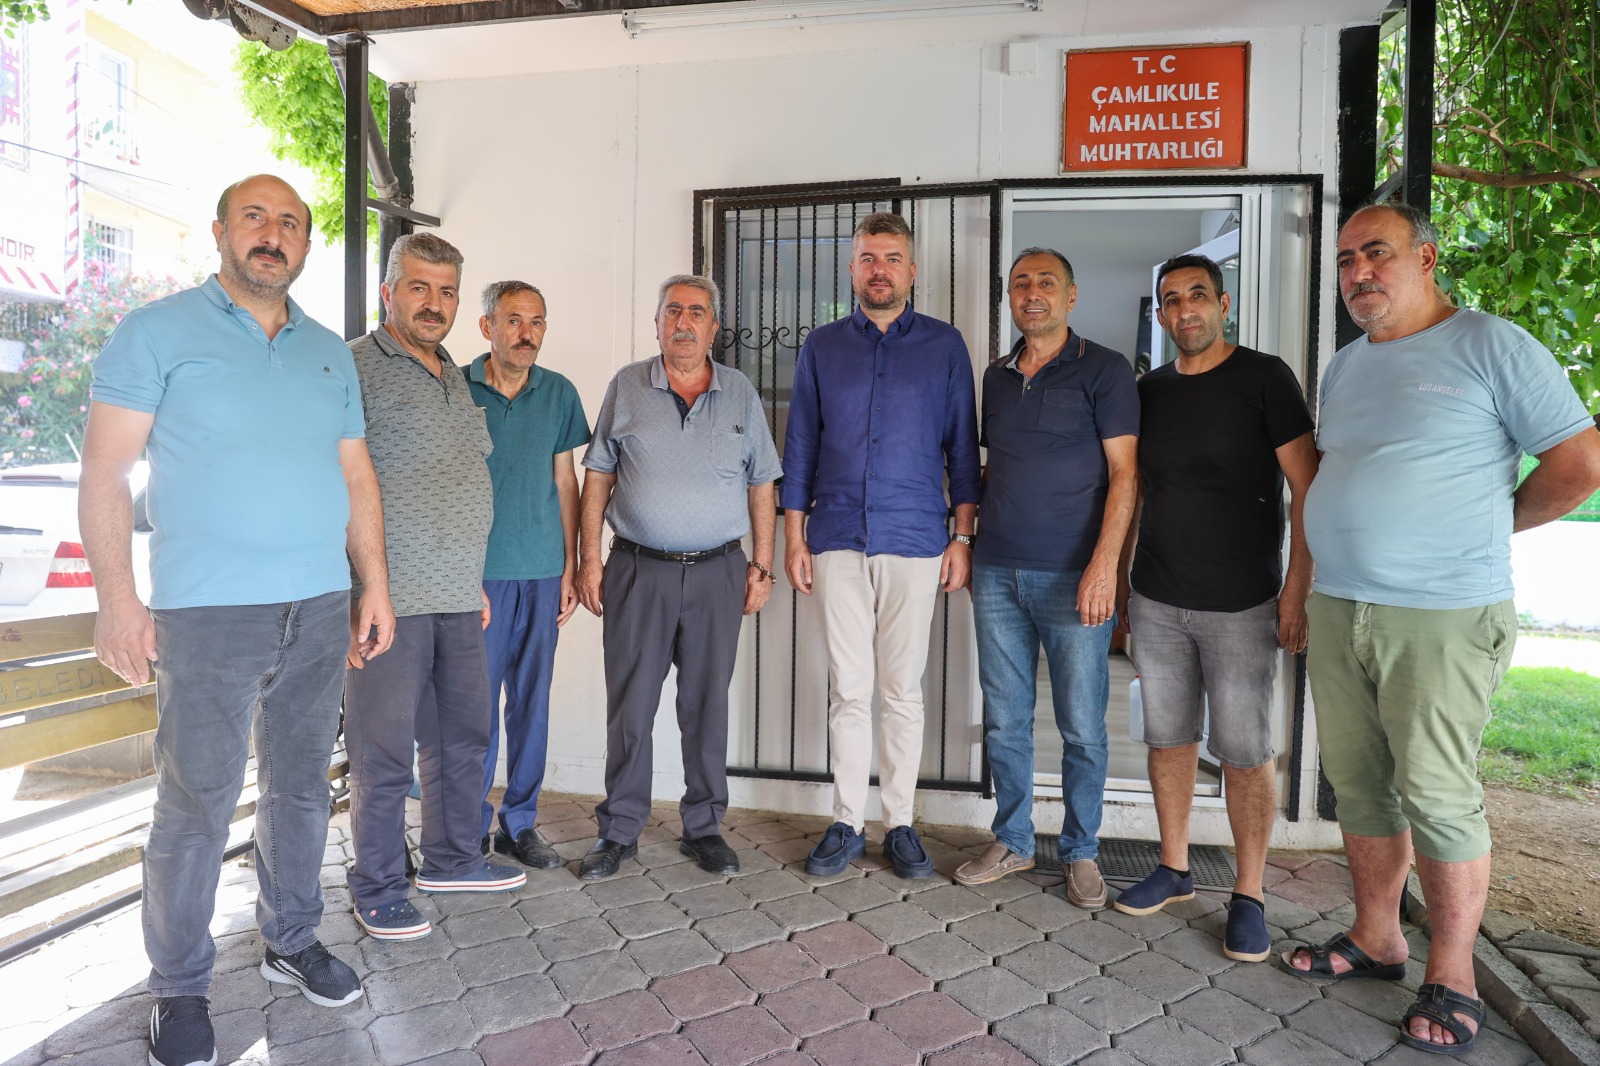 İzmir'in Incisi Buca'da Mahalle Ziyaretleri Sürdürülüyor0